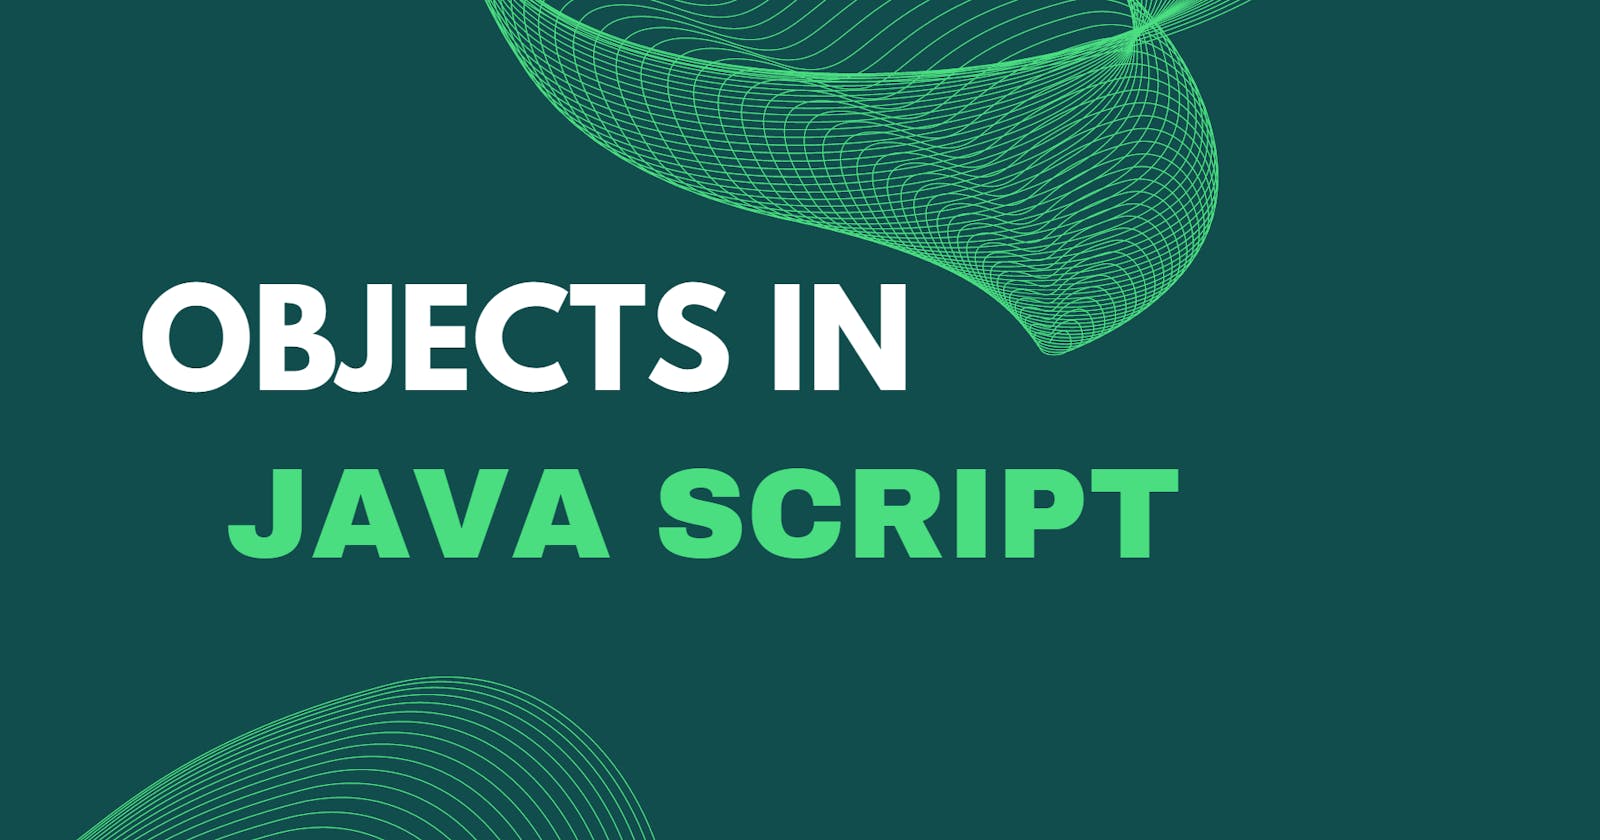 Objects in Java Script